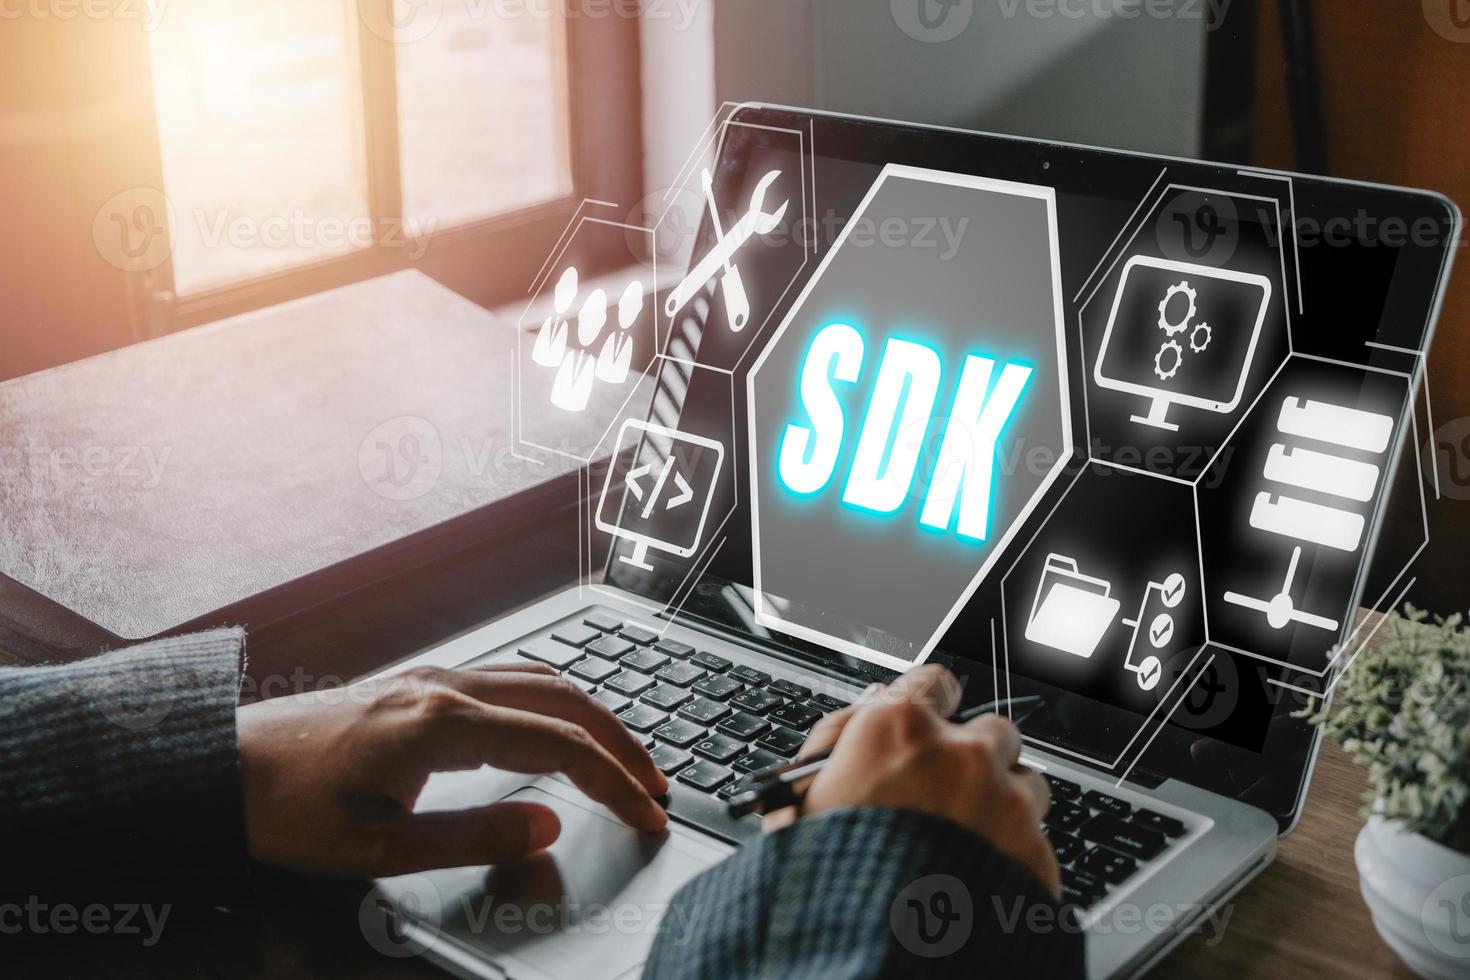 sdk - software development kit programmiersprache technologiekonzept, person, die tastaturcomputer mit sdk-symbol auf virtuellem bildschirm eingibt. foto